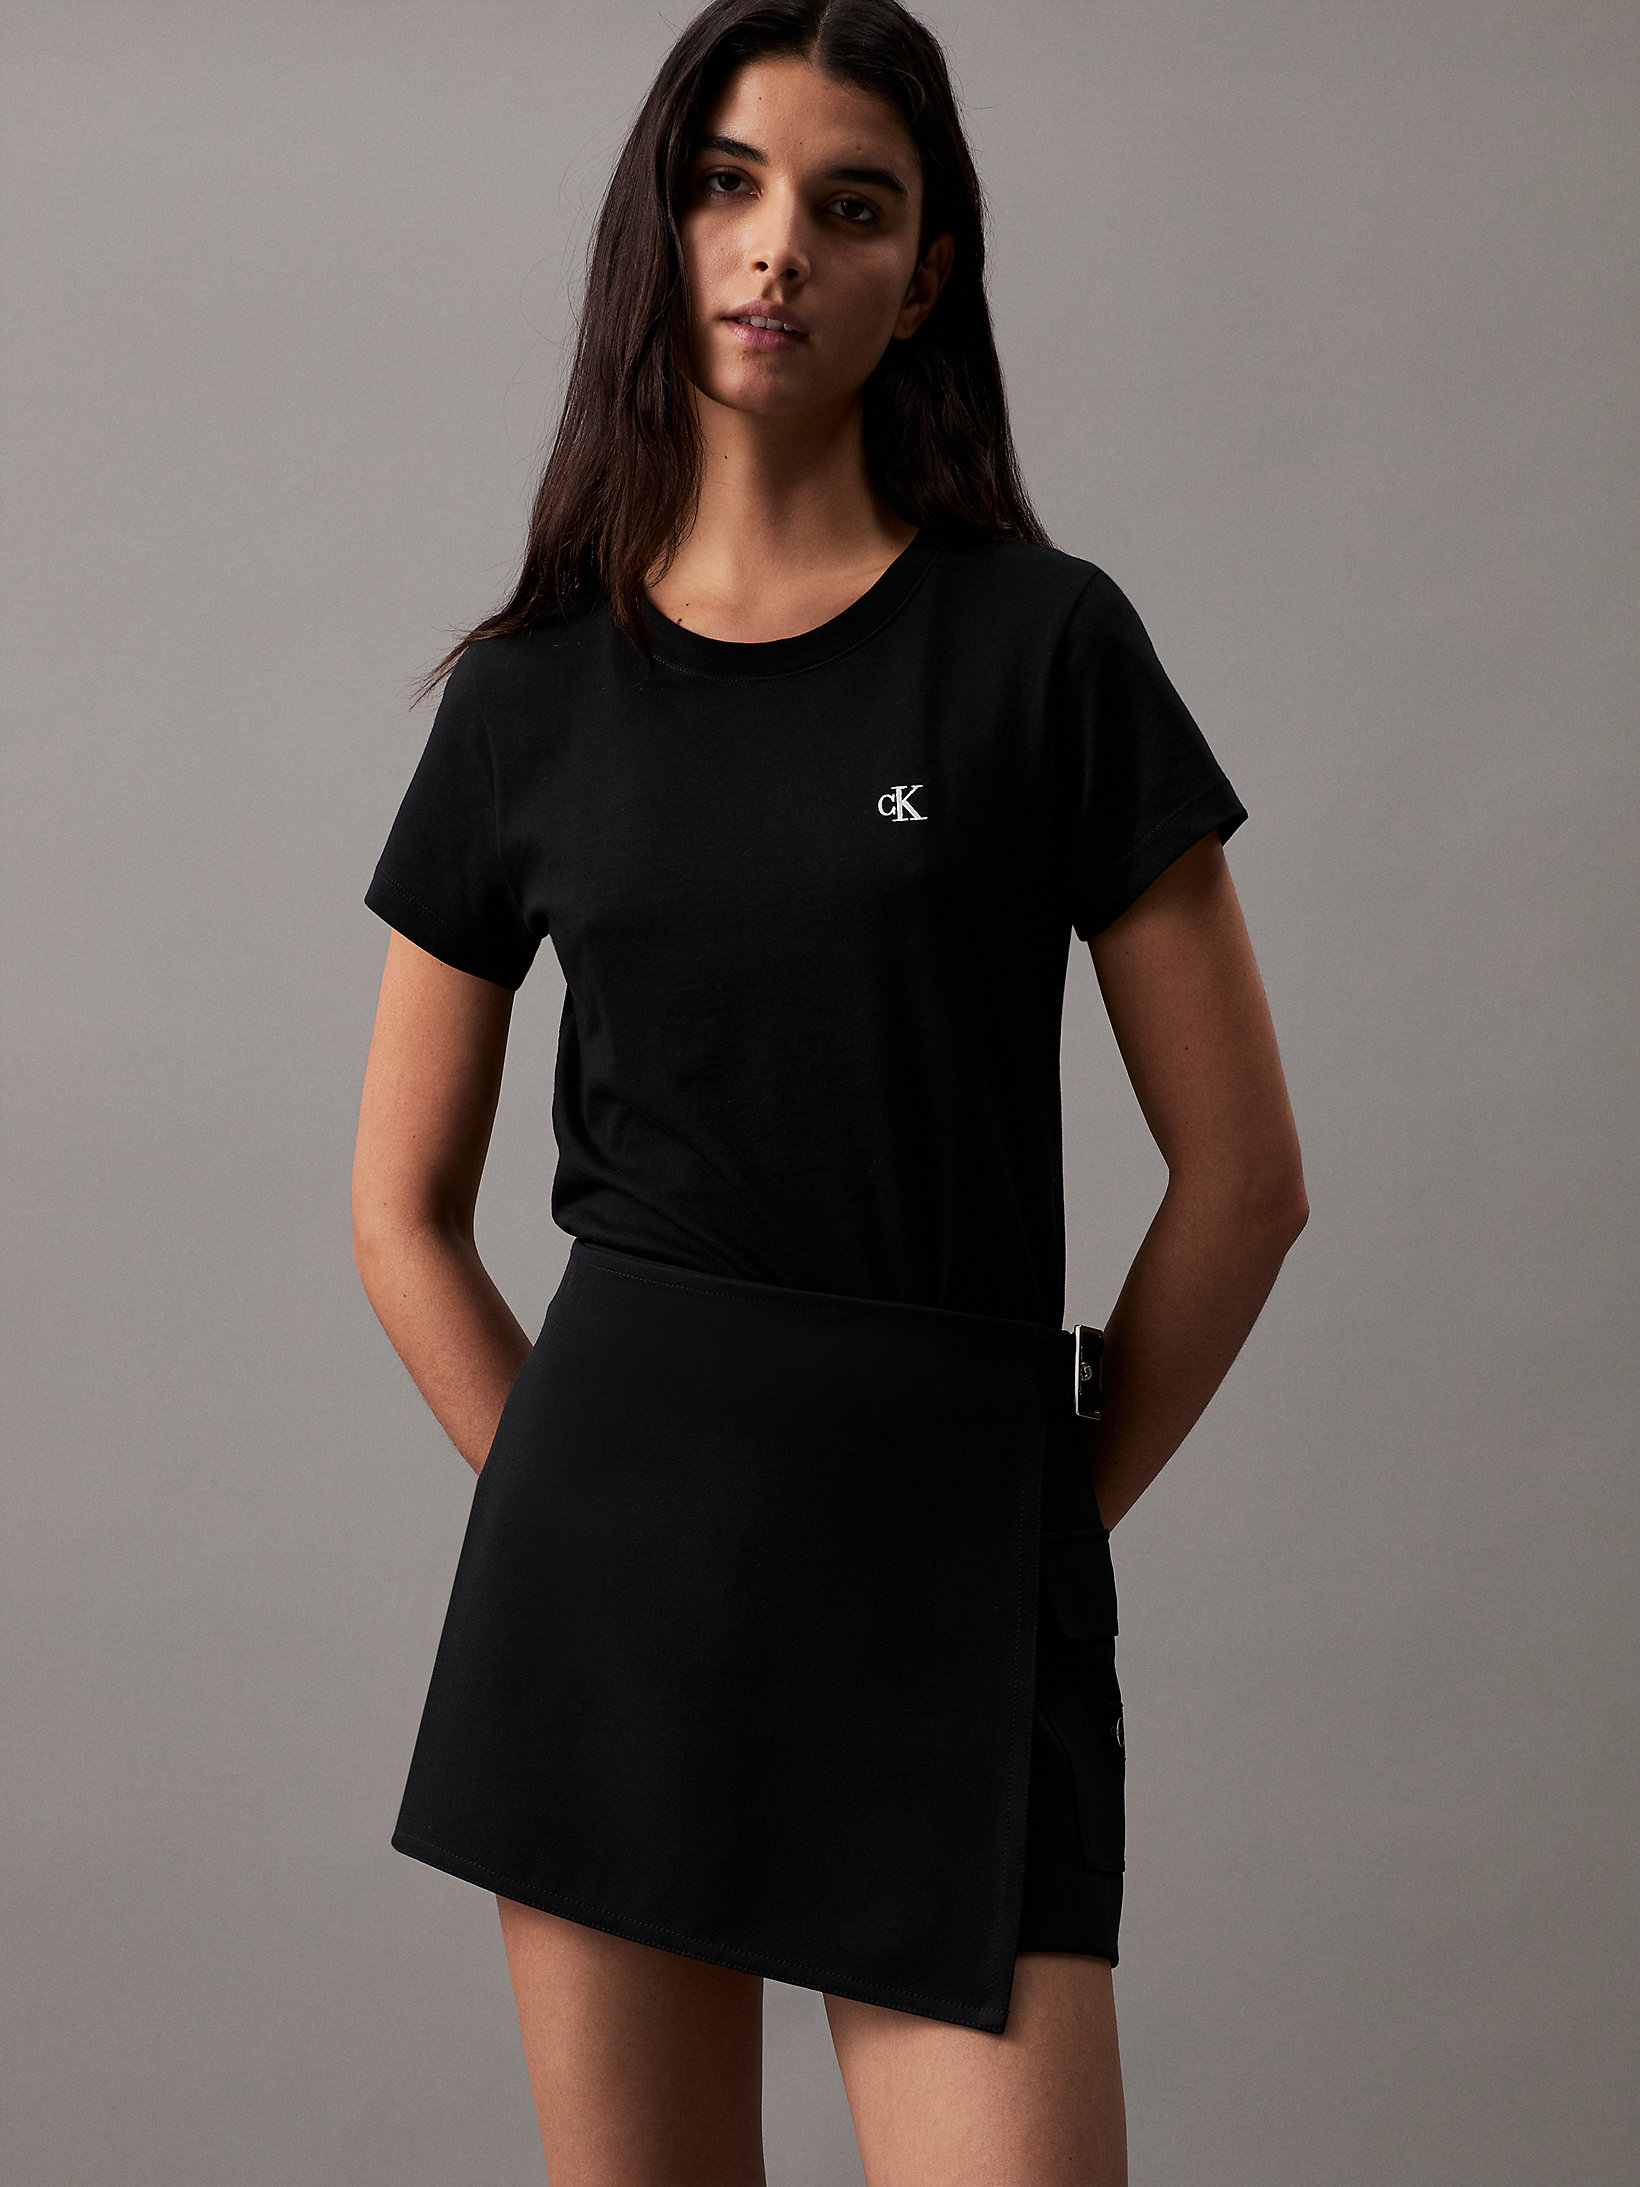 CK Black Slim Organic Cotton T-Shirt undefined women Calvin Klein